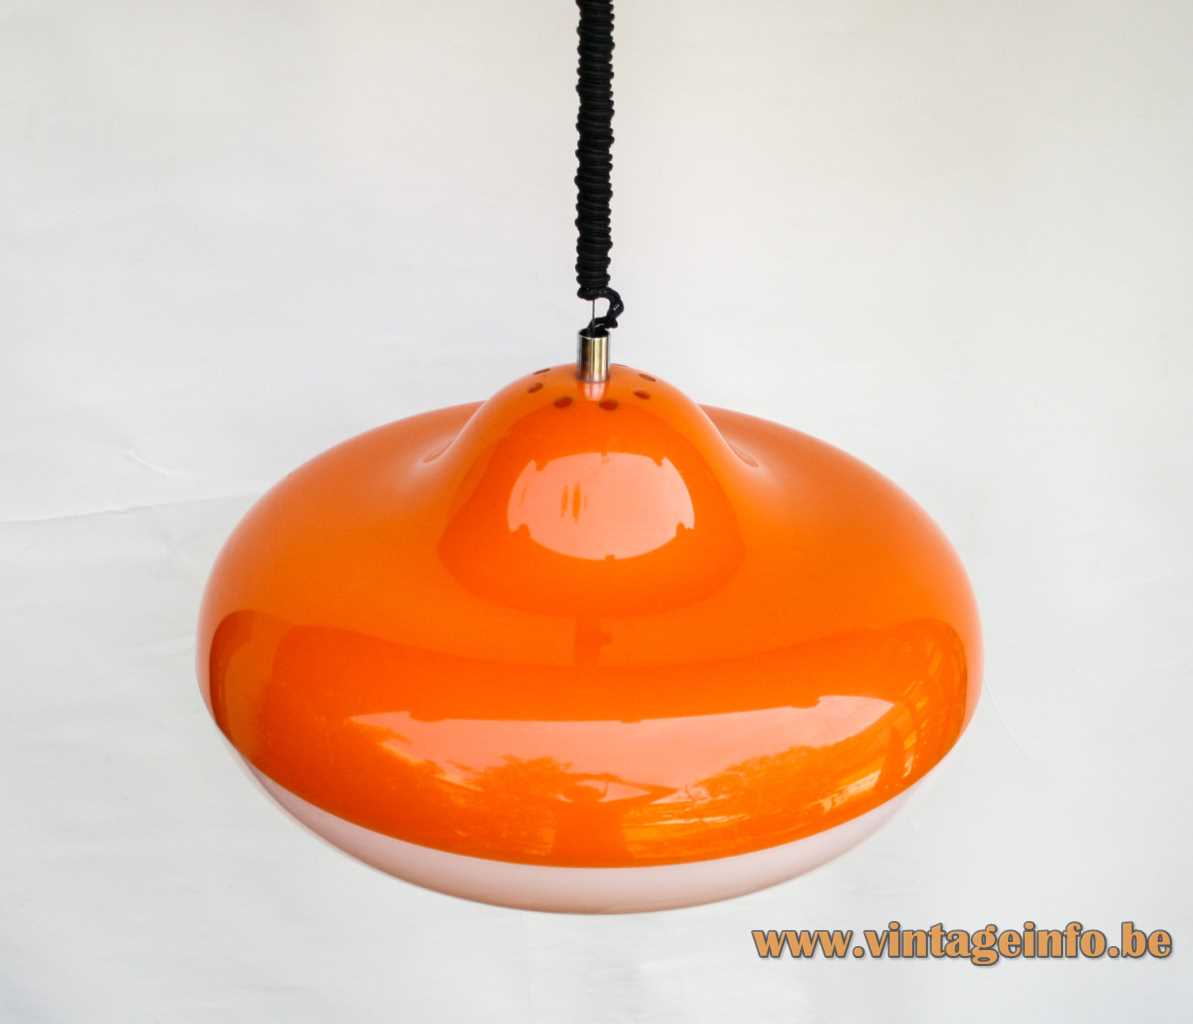 Design House Disco pendant lamp whirligig UFO spinner orange & white acrylic chrome handle Harvey Guzzini 1960s